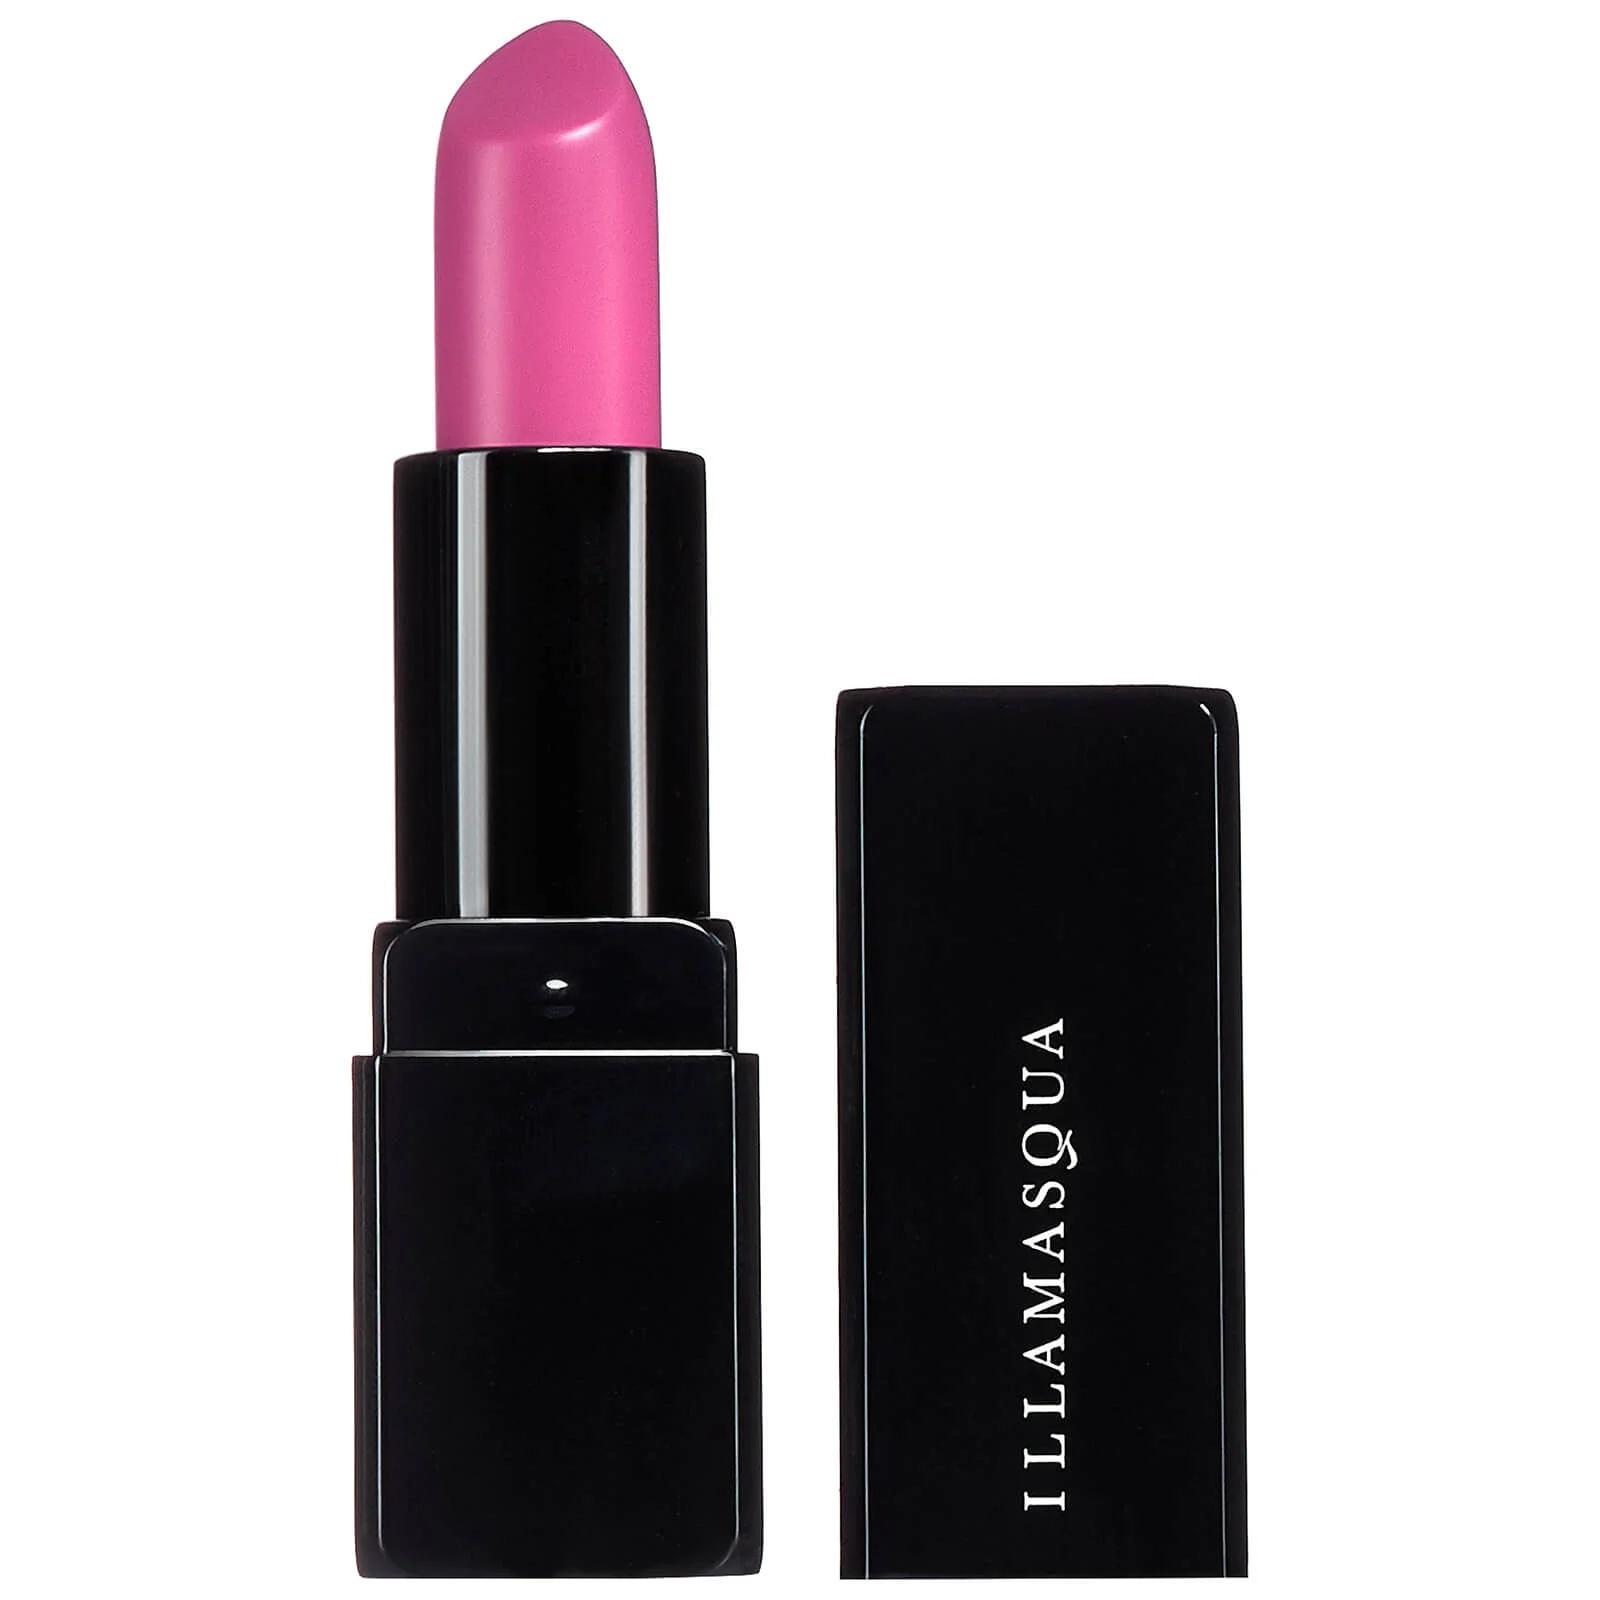 Illamasqua Antimatter Lipstick - Glowstick Image 1